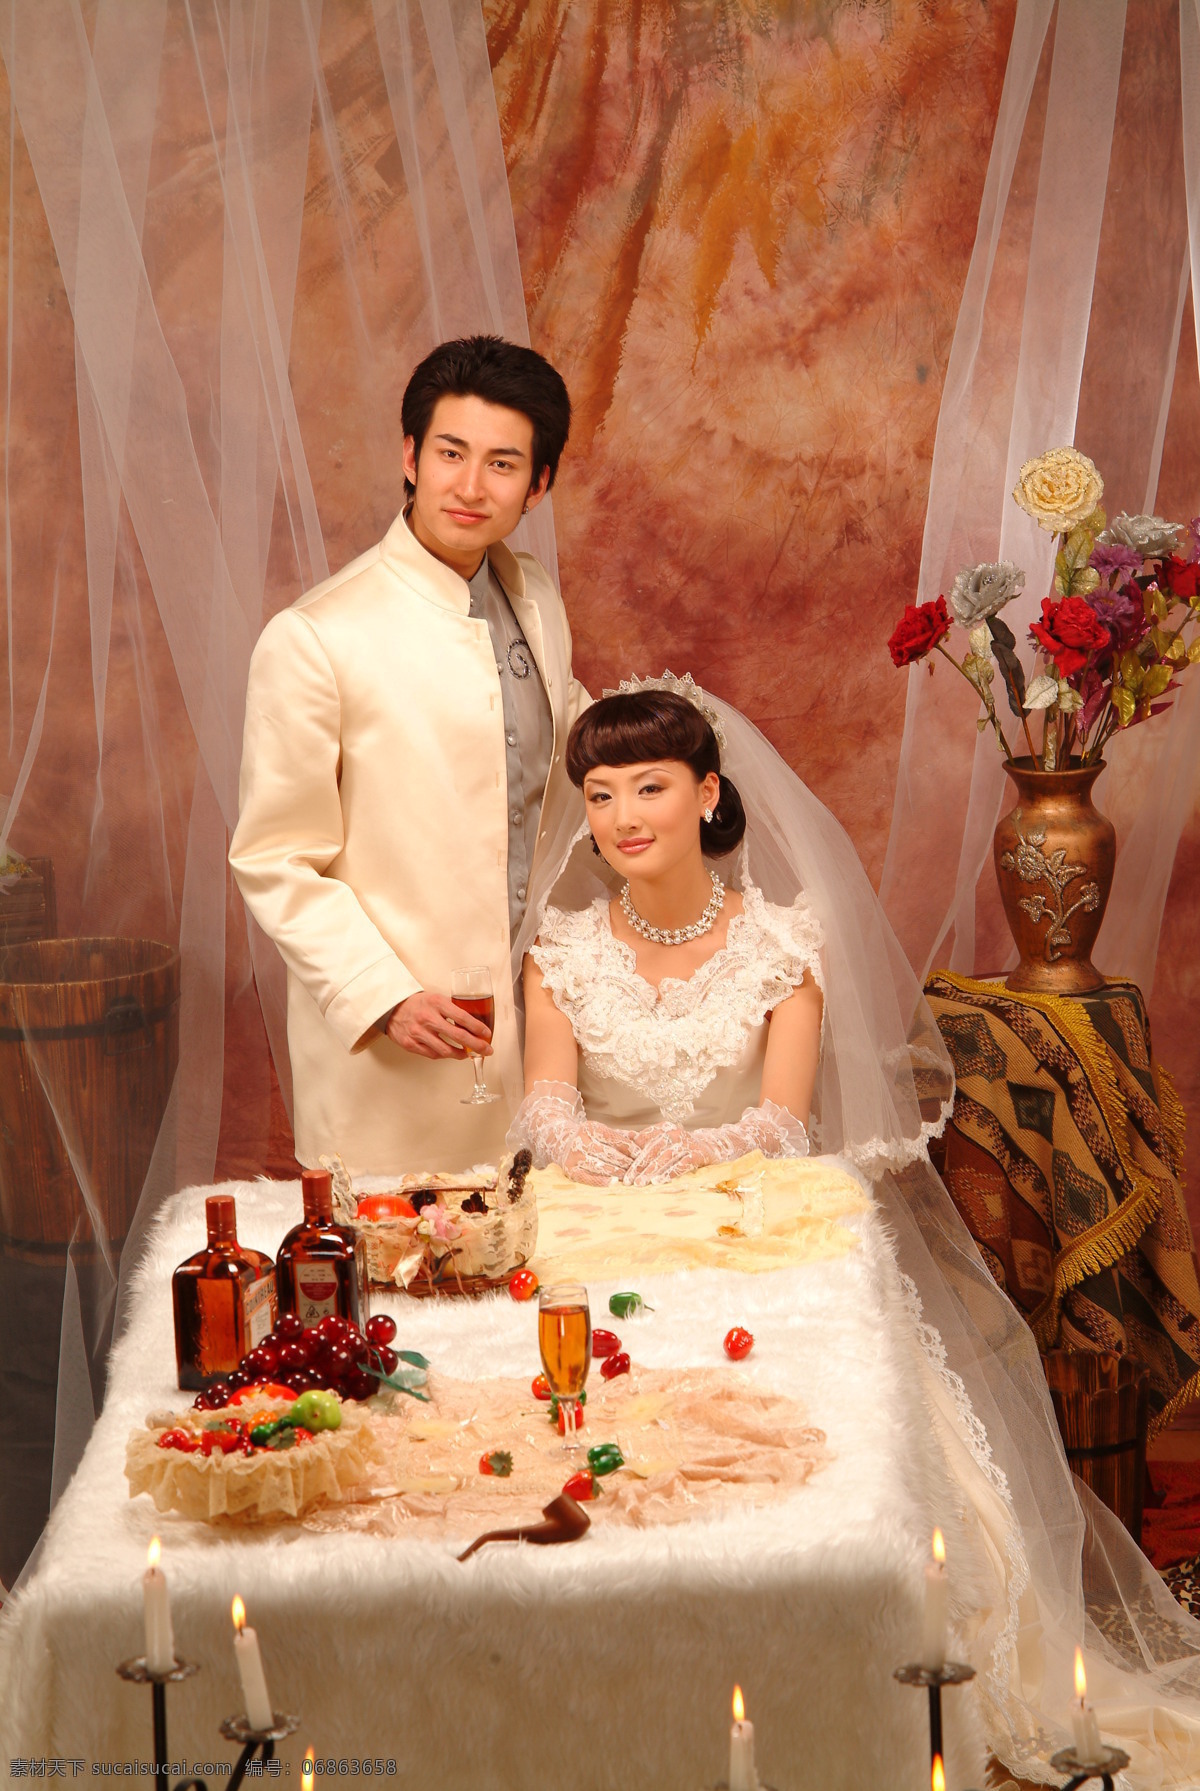 香港写真 婚纱照 美女 新娘 新郎 红地毯 花朵 笑容 西装 红酒 桌子 台灯 婚纱摄影 香港 婚纱 二 人物摄影 人物图库